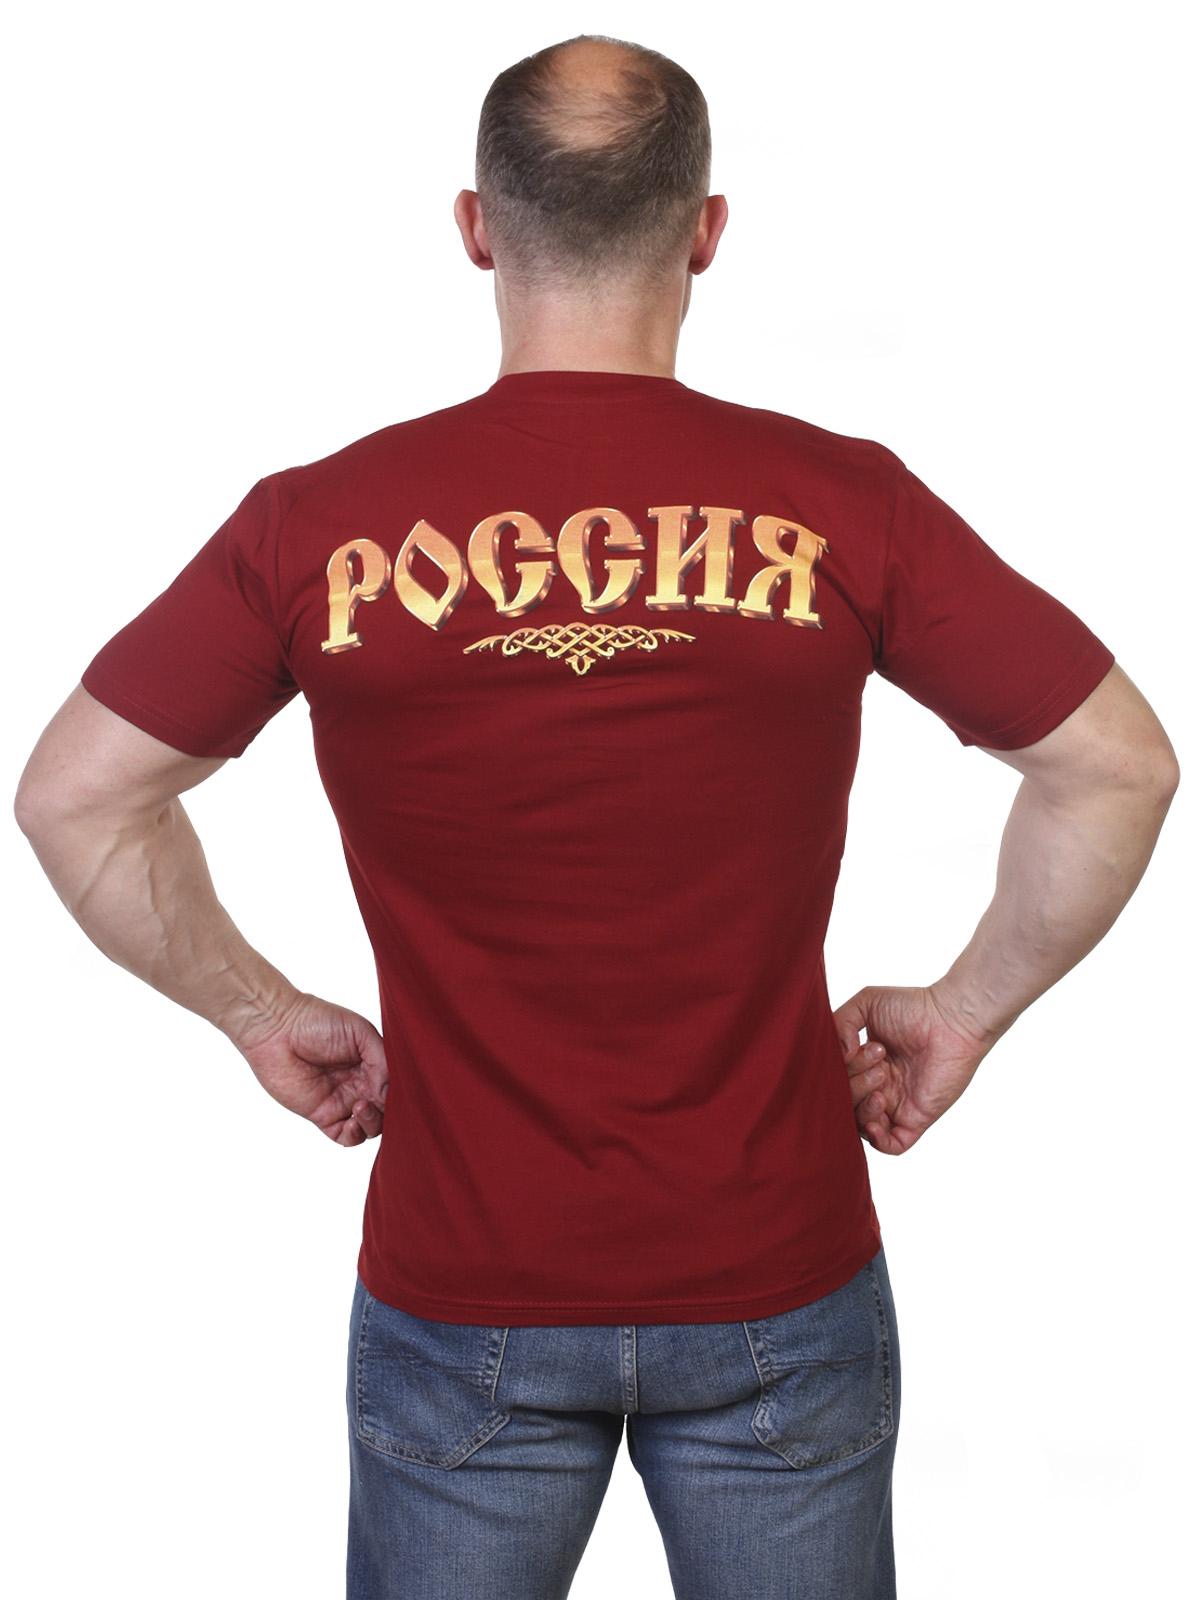 Патриотическая футболка с гербом России